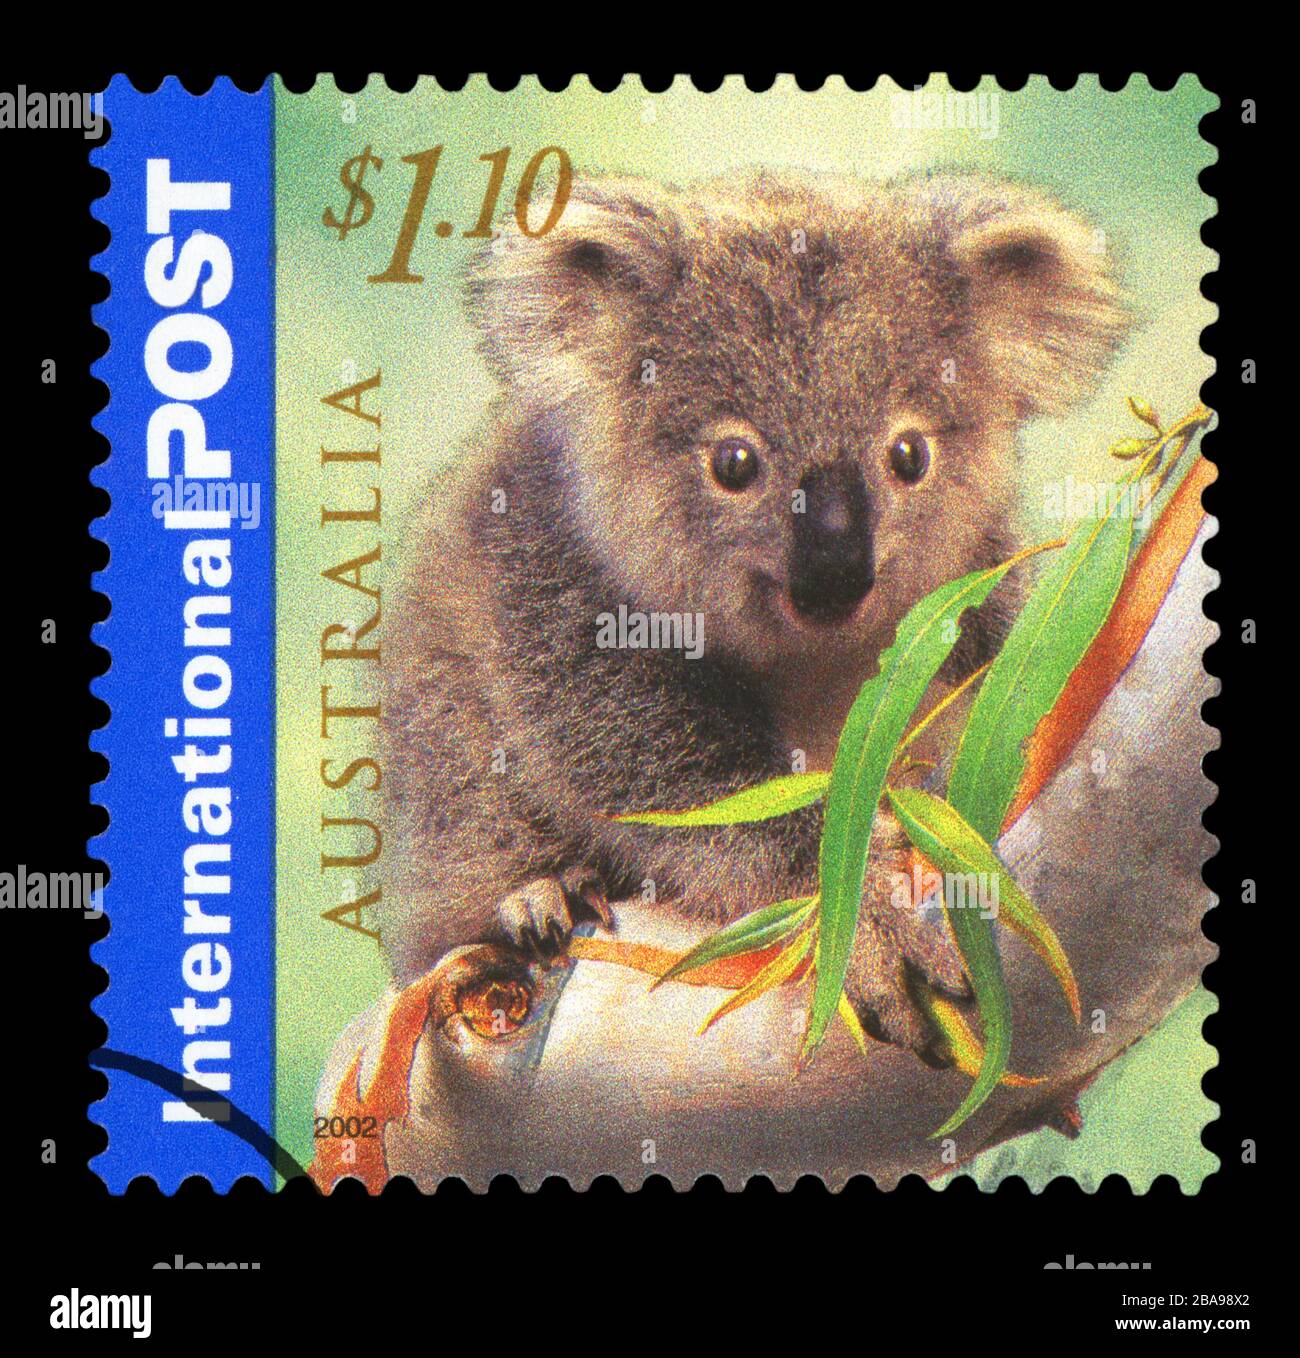 AUSTRALIE - VERS 2002 : un Timbre imprimé en AUSTRALIE montre la série Koala mangeant, série de la poste internationale, vers 2002 Banque D'Images